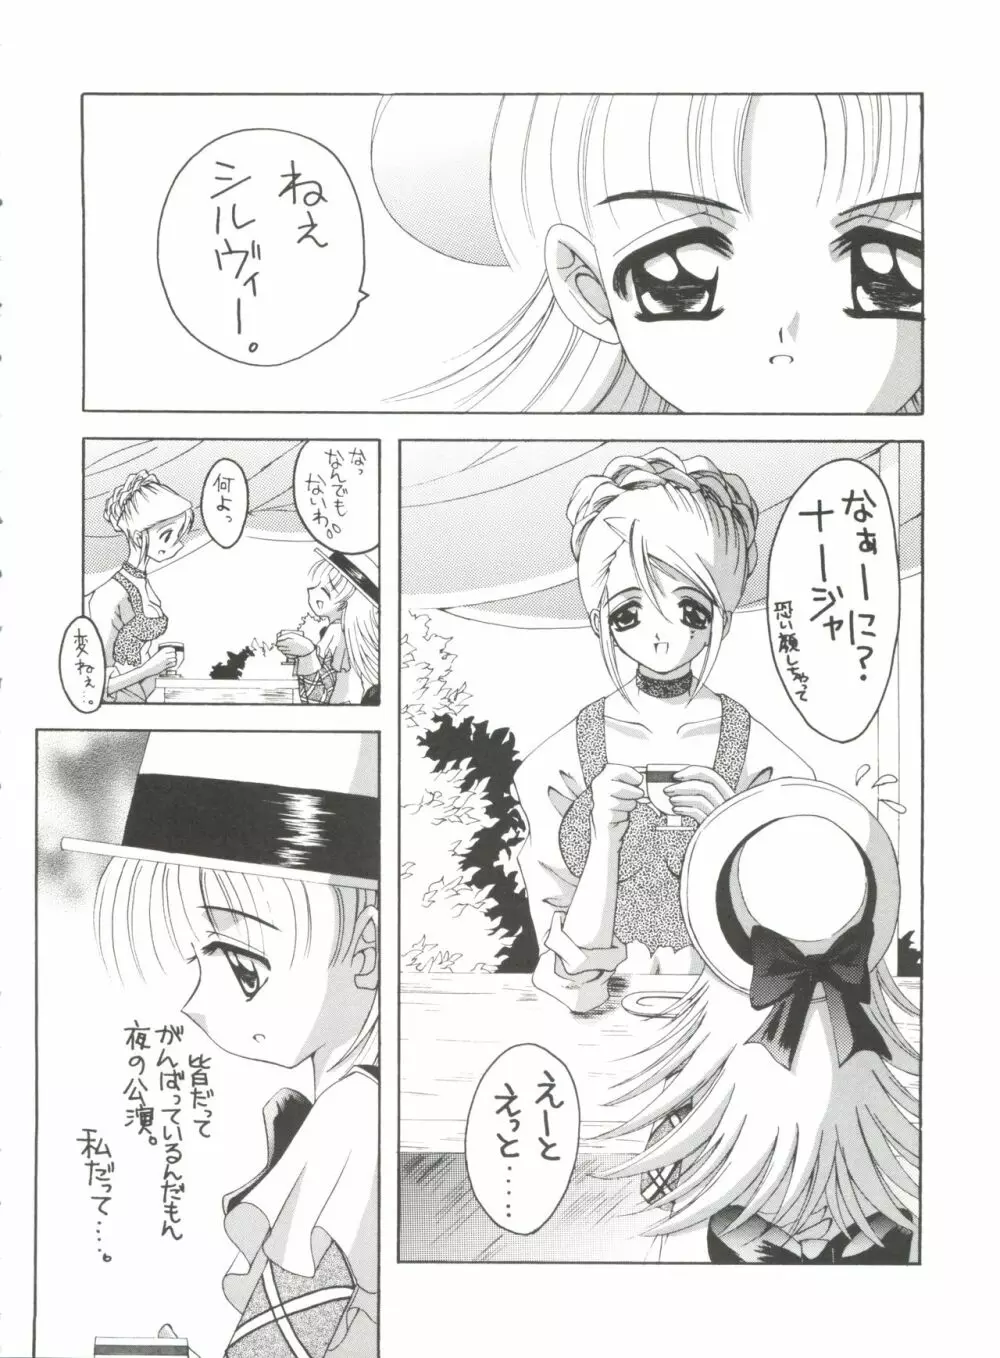 ナージャ!2 ナージャと黒薔薇 - page7